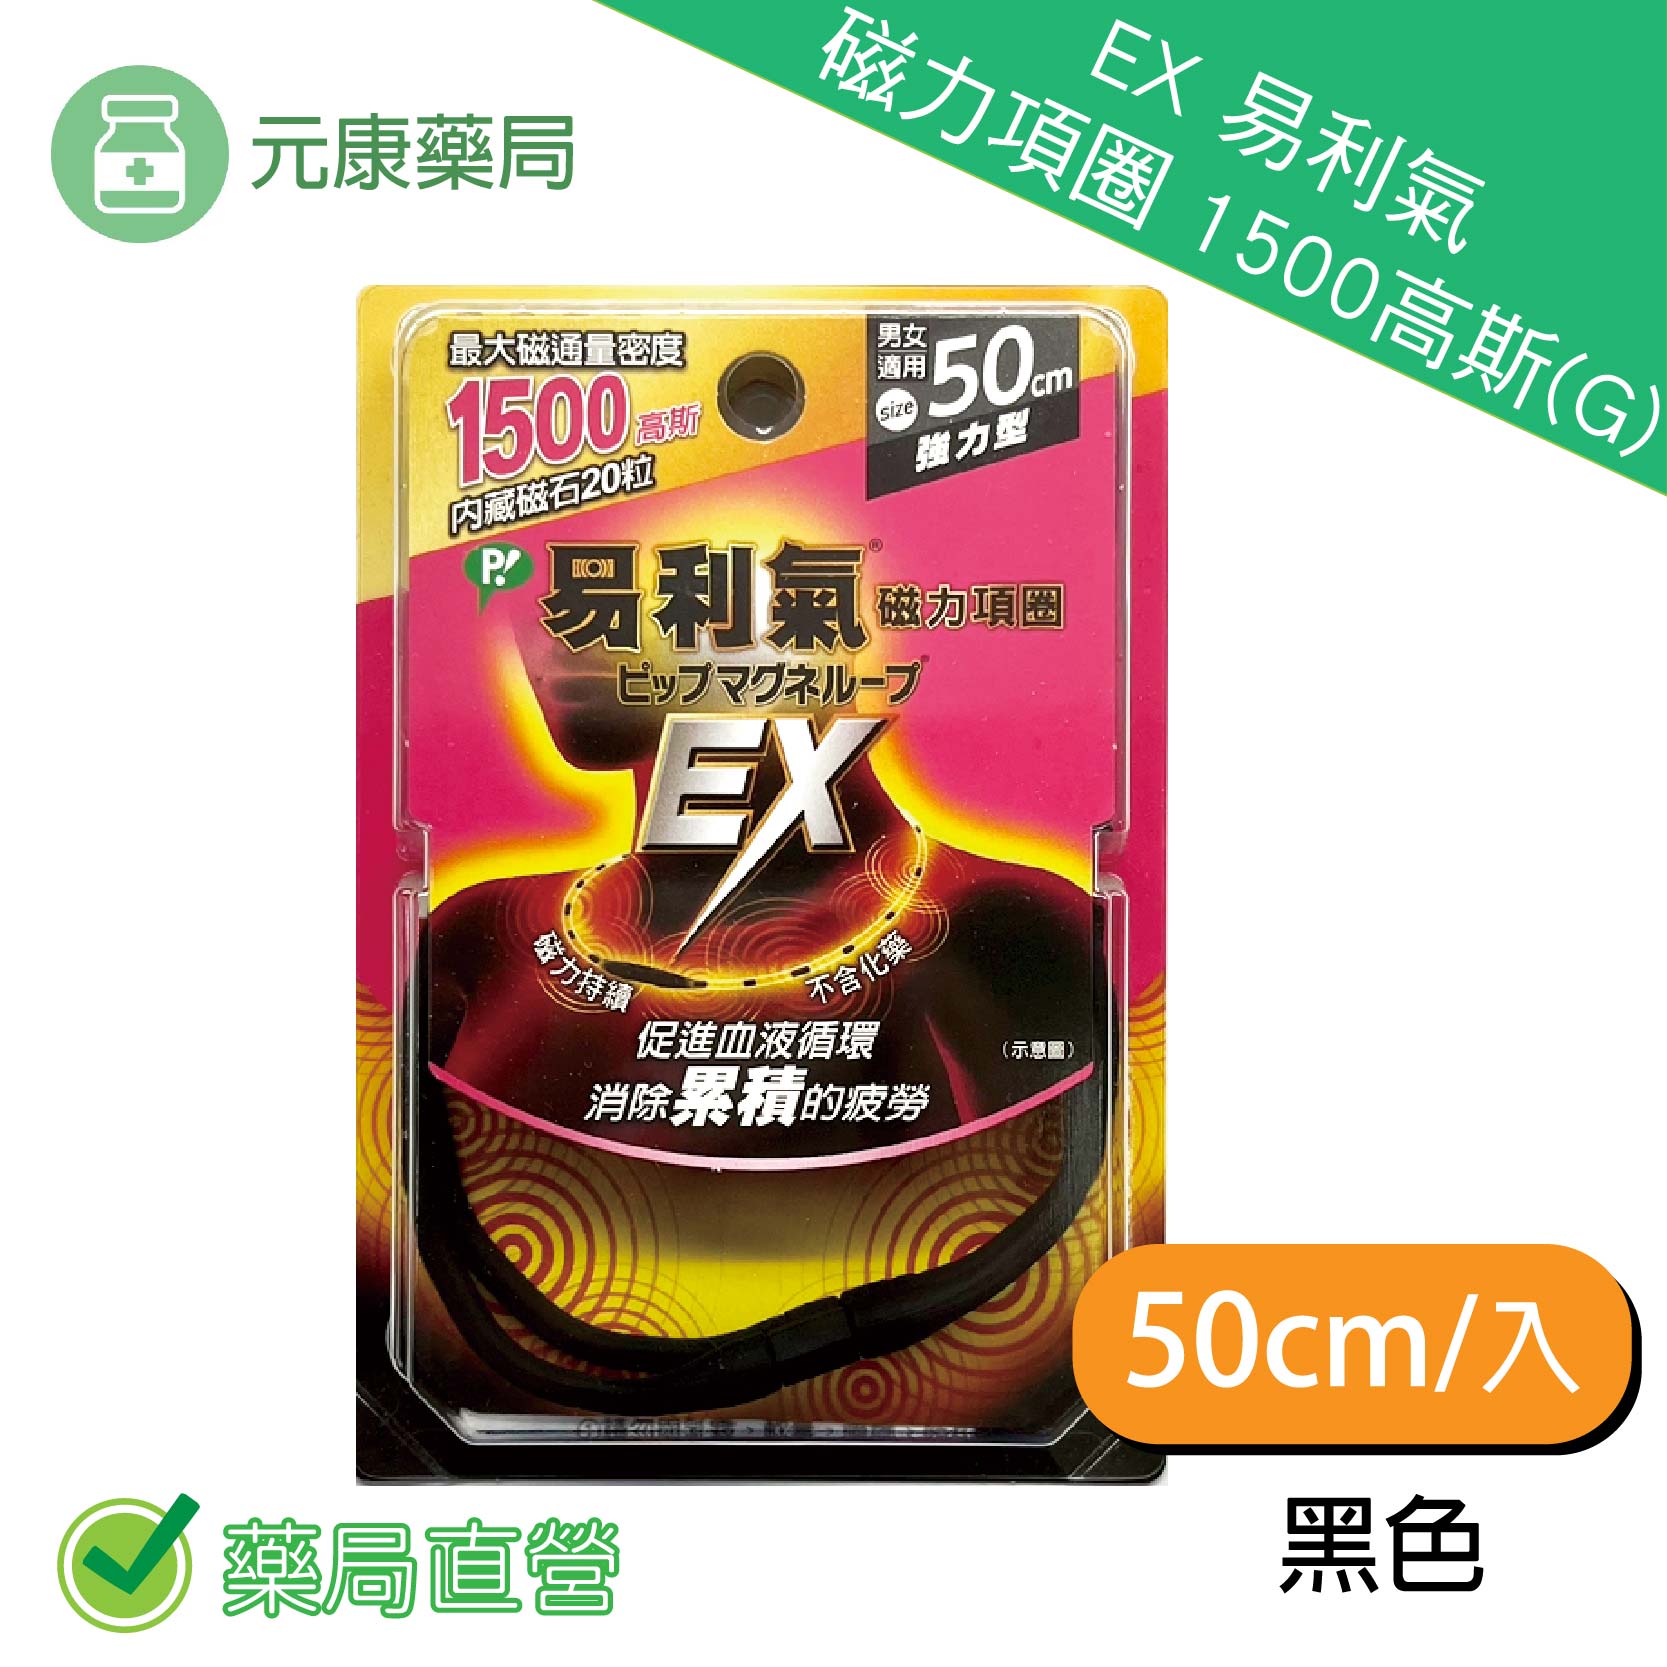 (加強版) EX 易利氣 磁力項圈 1500高斯(G) (黑) 50cm (原廠公司貨)